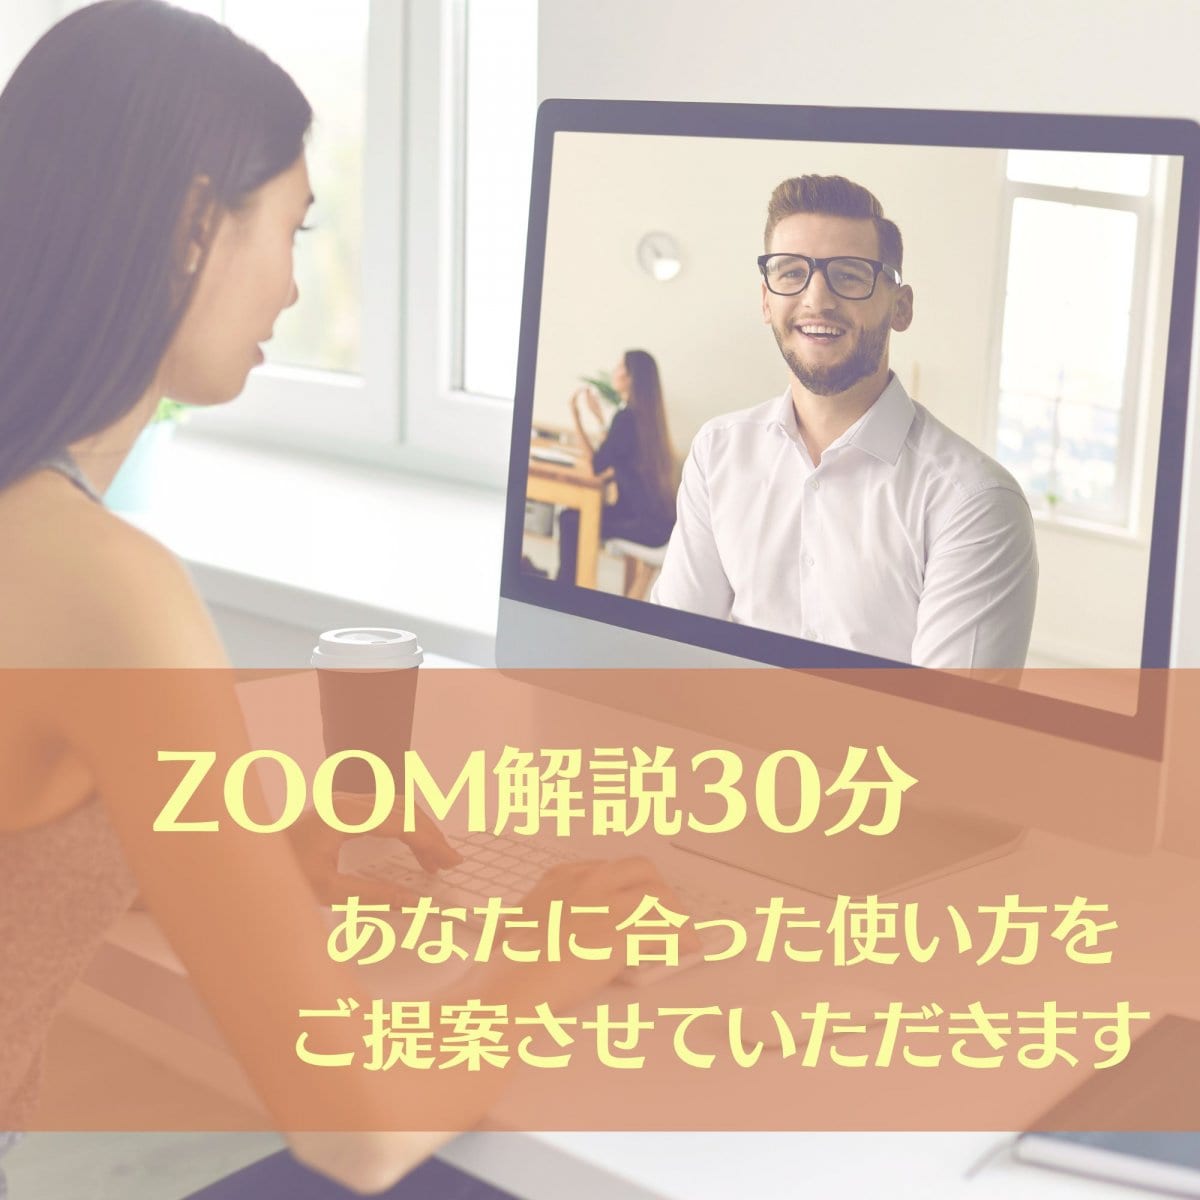 リアクト使用方法解説ZOOM(30分)